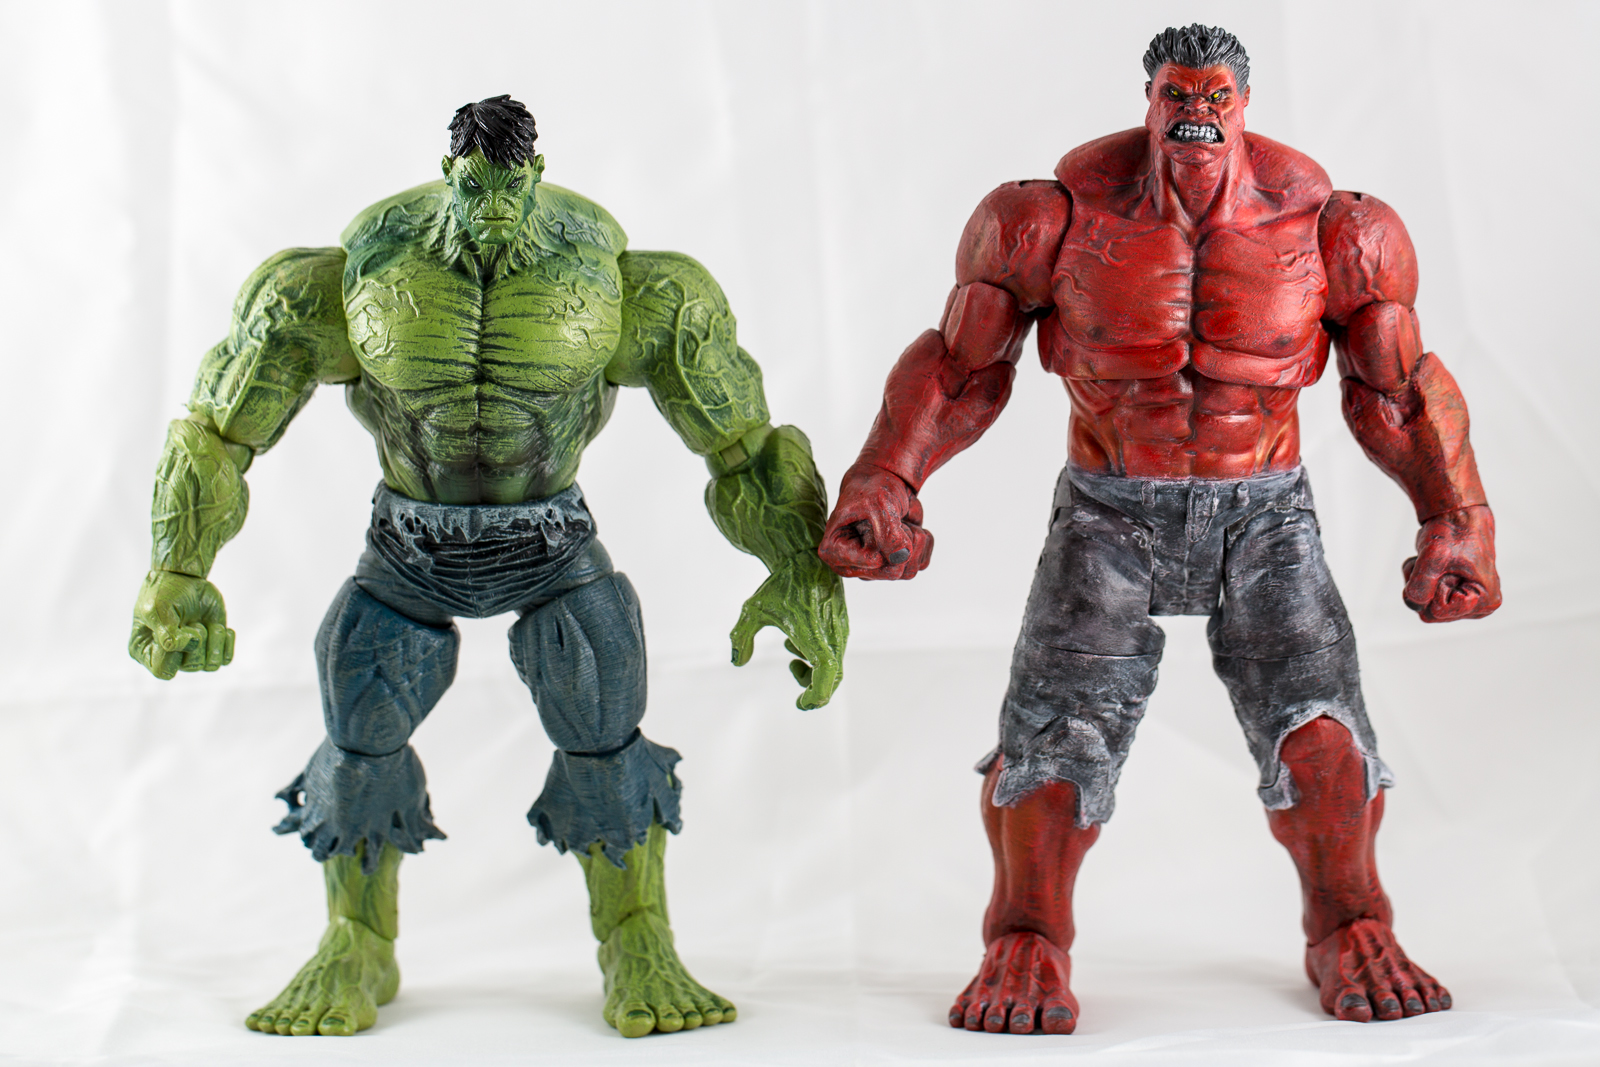 Red Dot Hobbies Custom Marvel Select Red Hulk